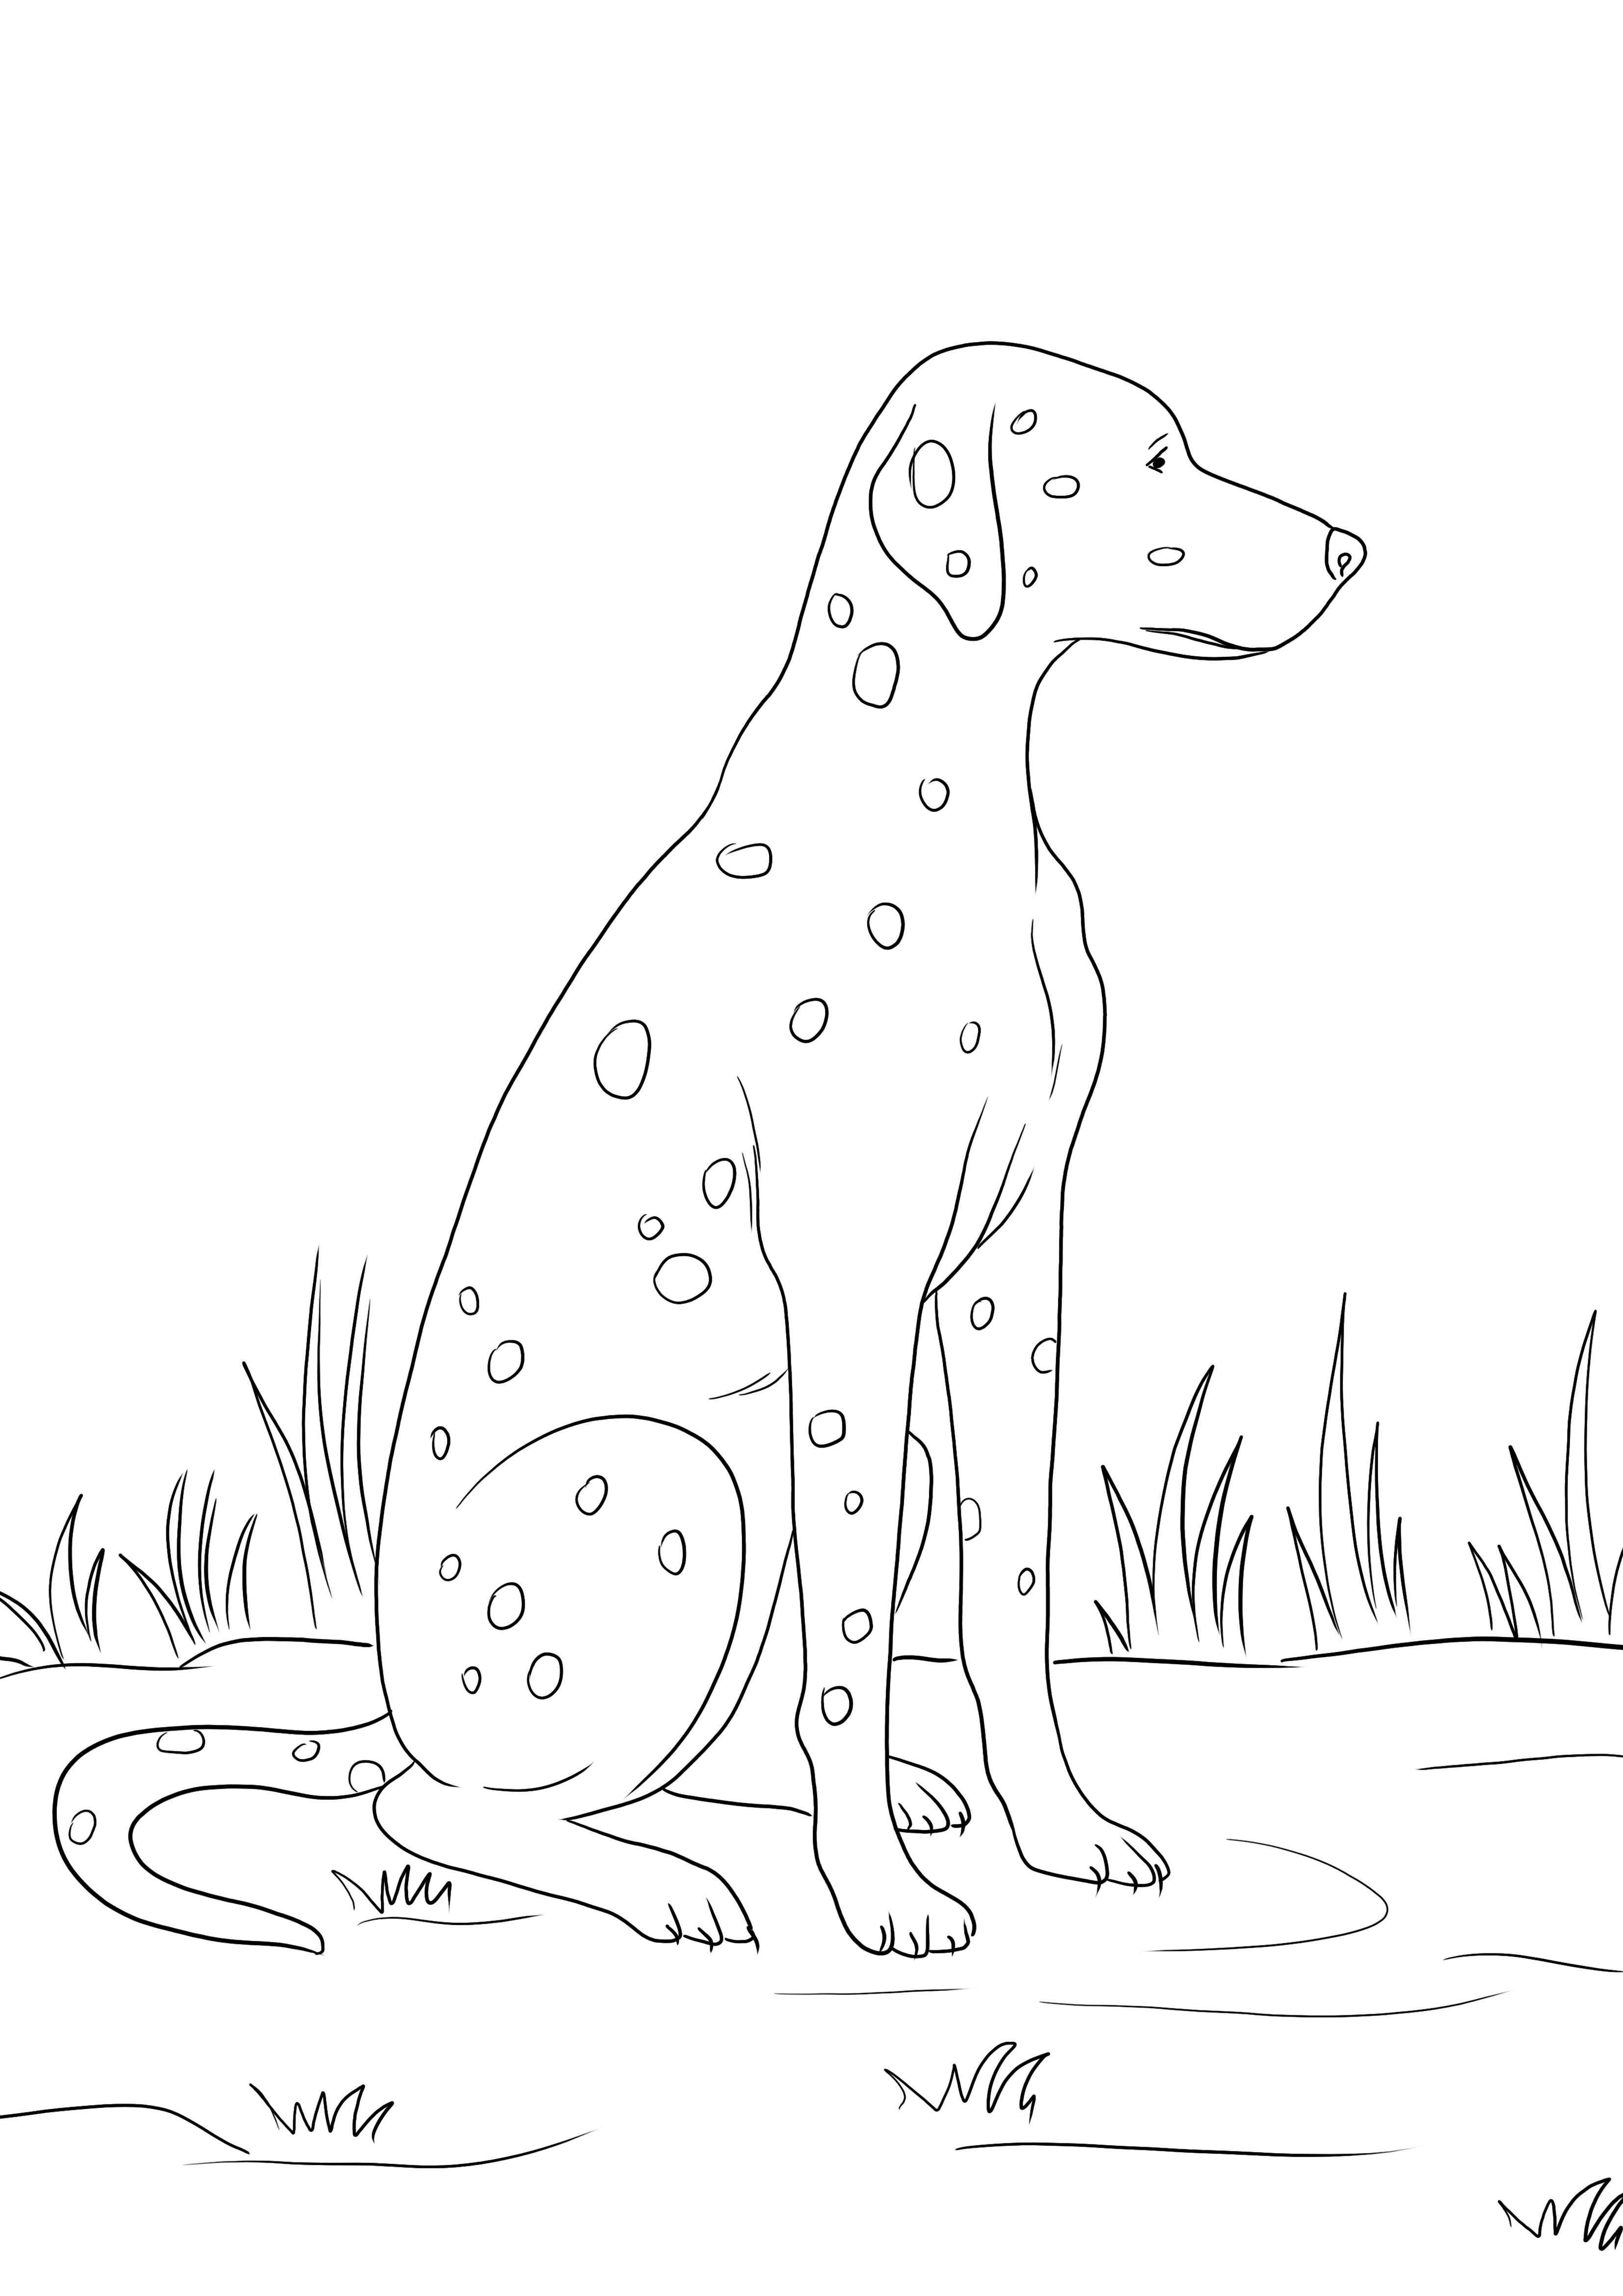 Ein kostenloser Ausdruck eines dalmatinischen Hundes zum einfachen Ausmalen für Kinder